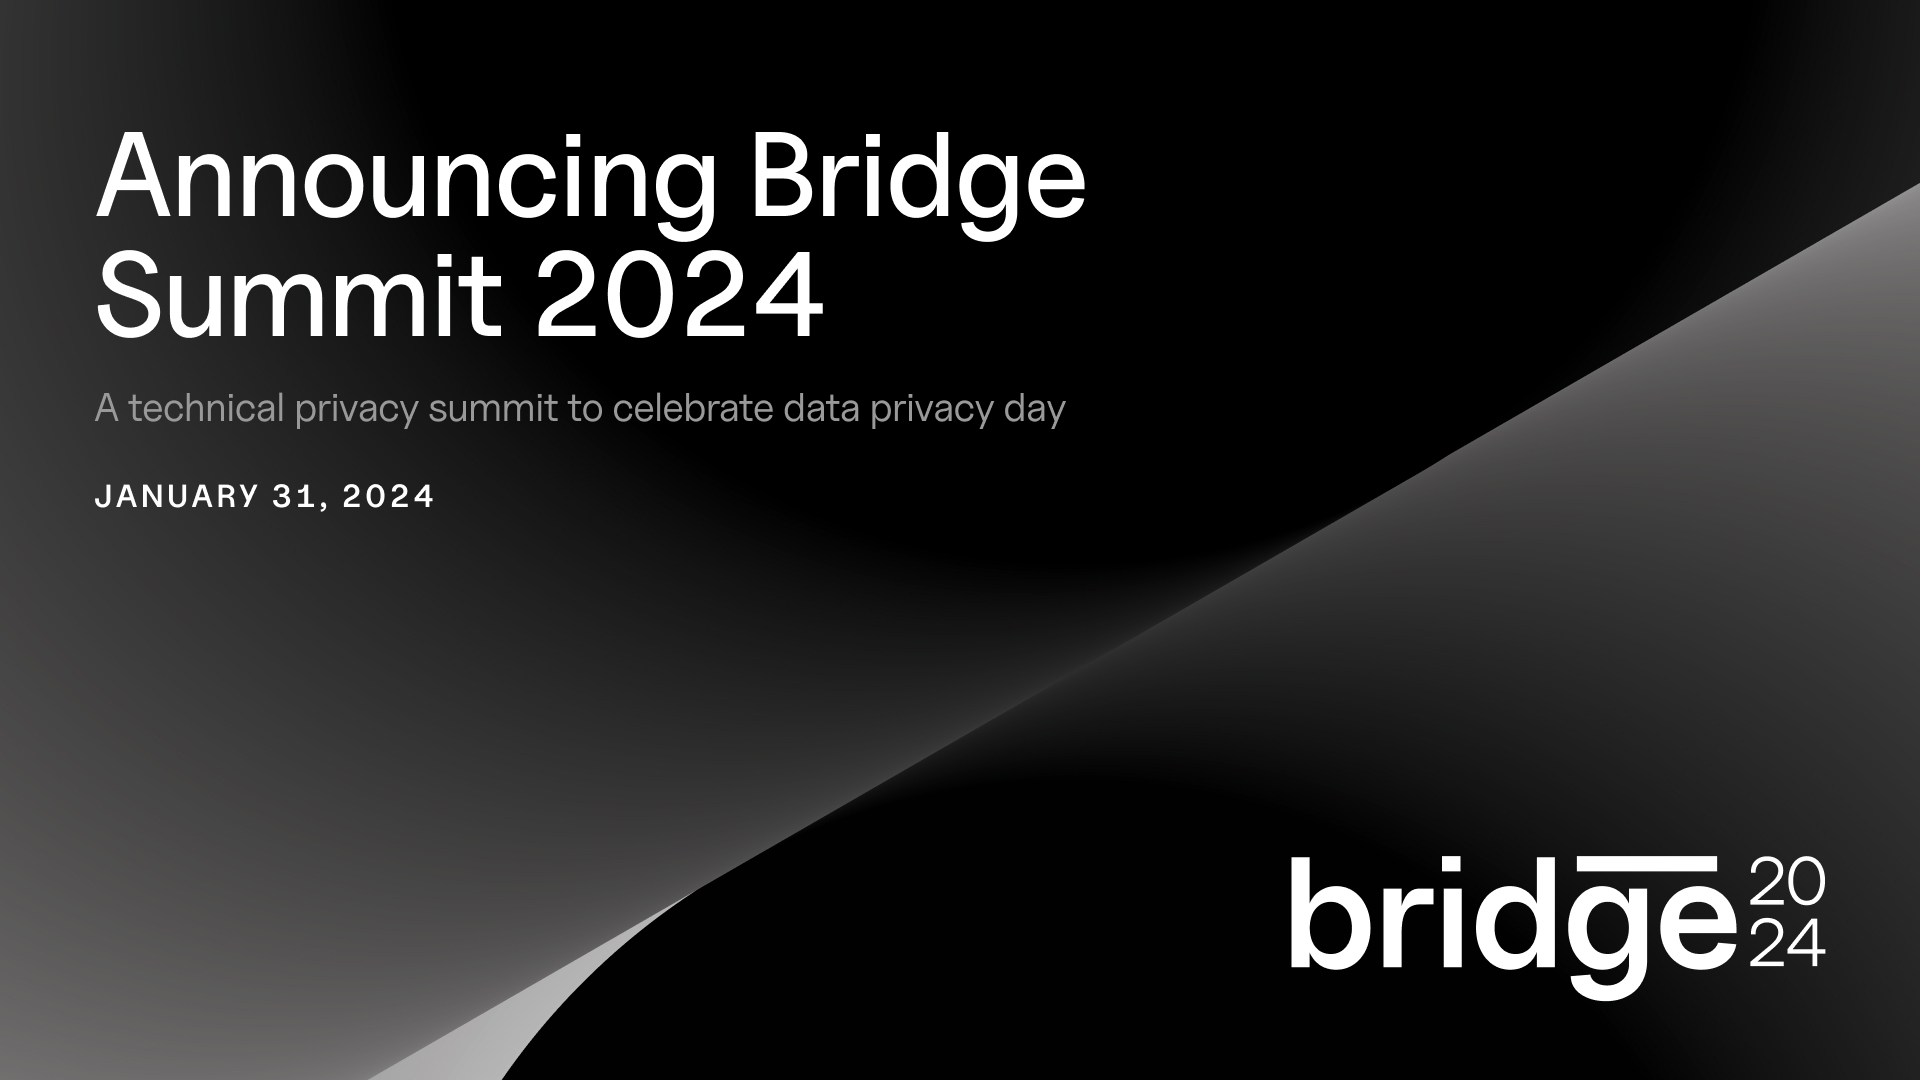 Bridge 2024 takes place on January 31, 2024